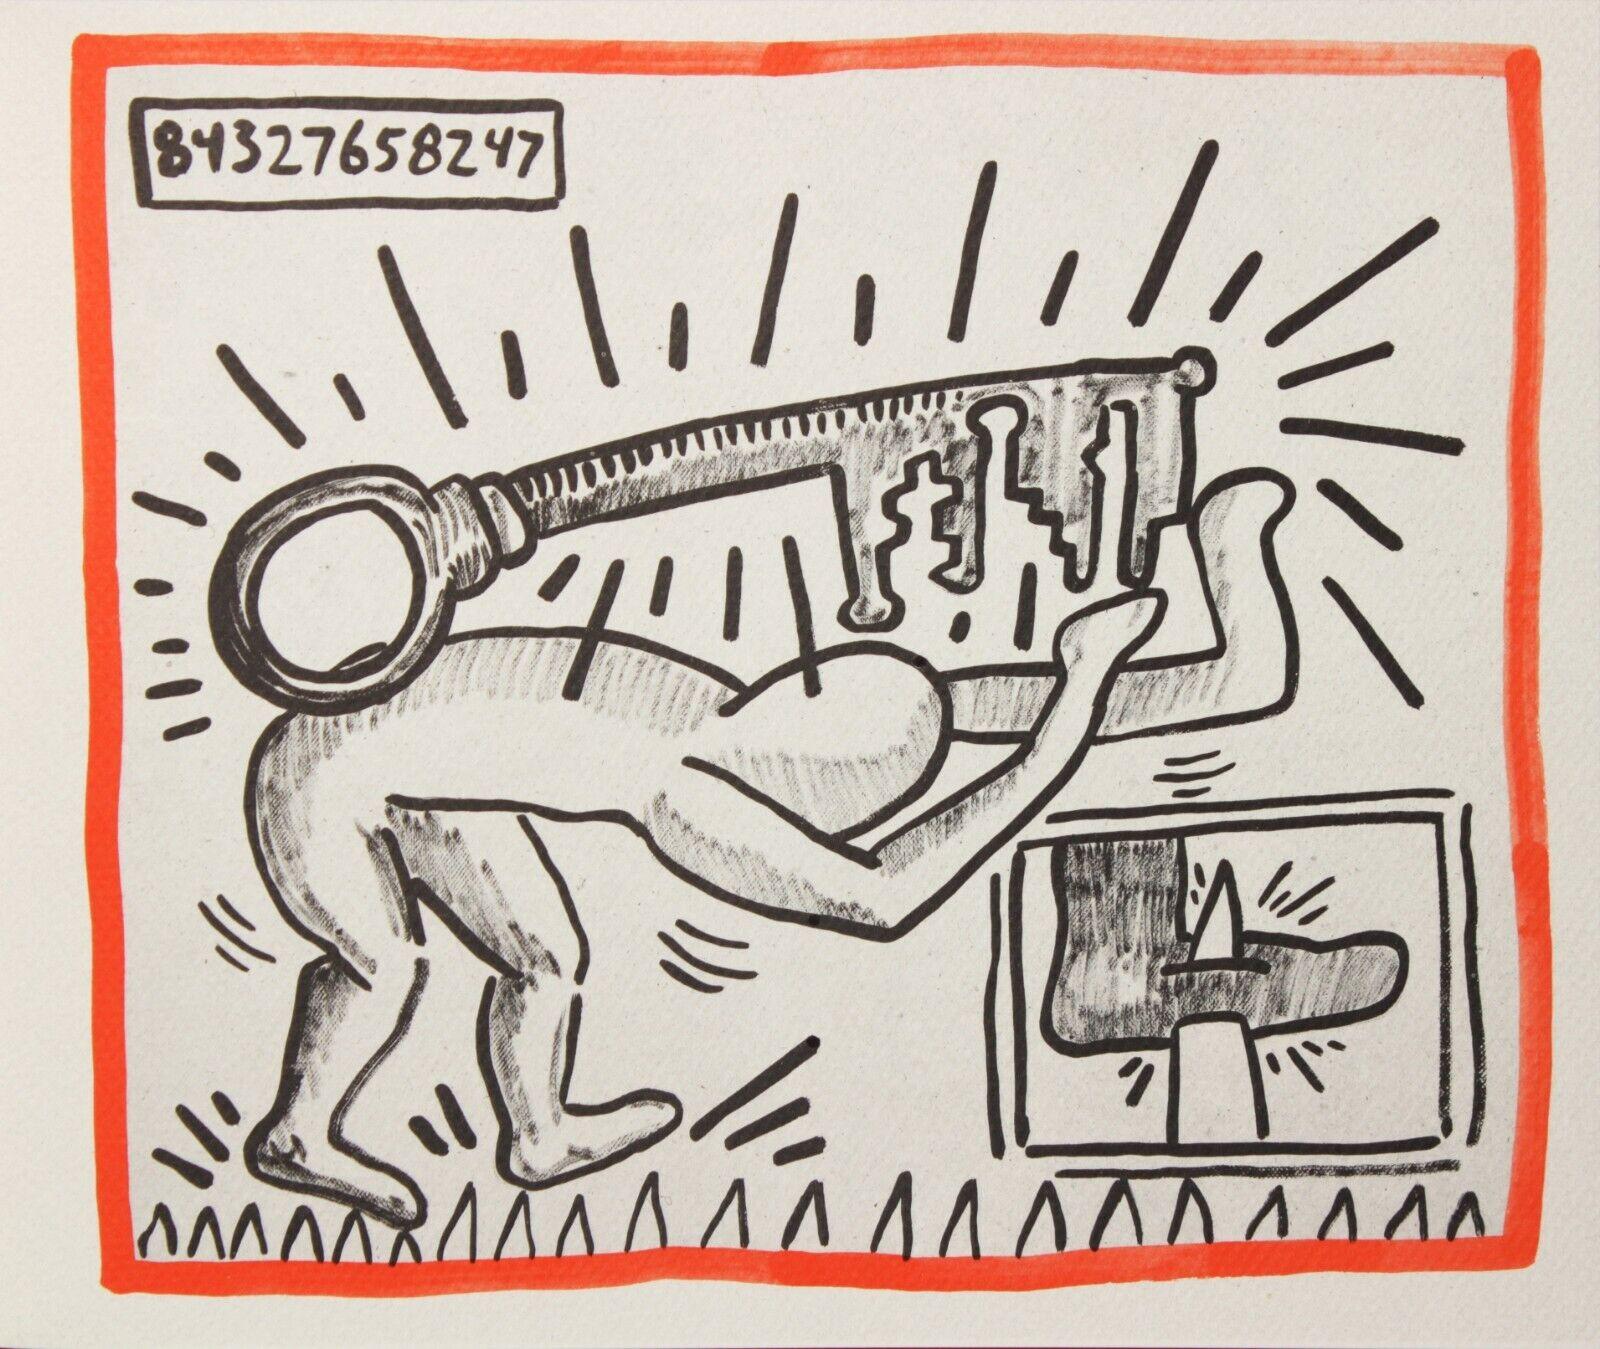 Keith Haring "Contra viento y marea" 1990